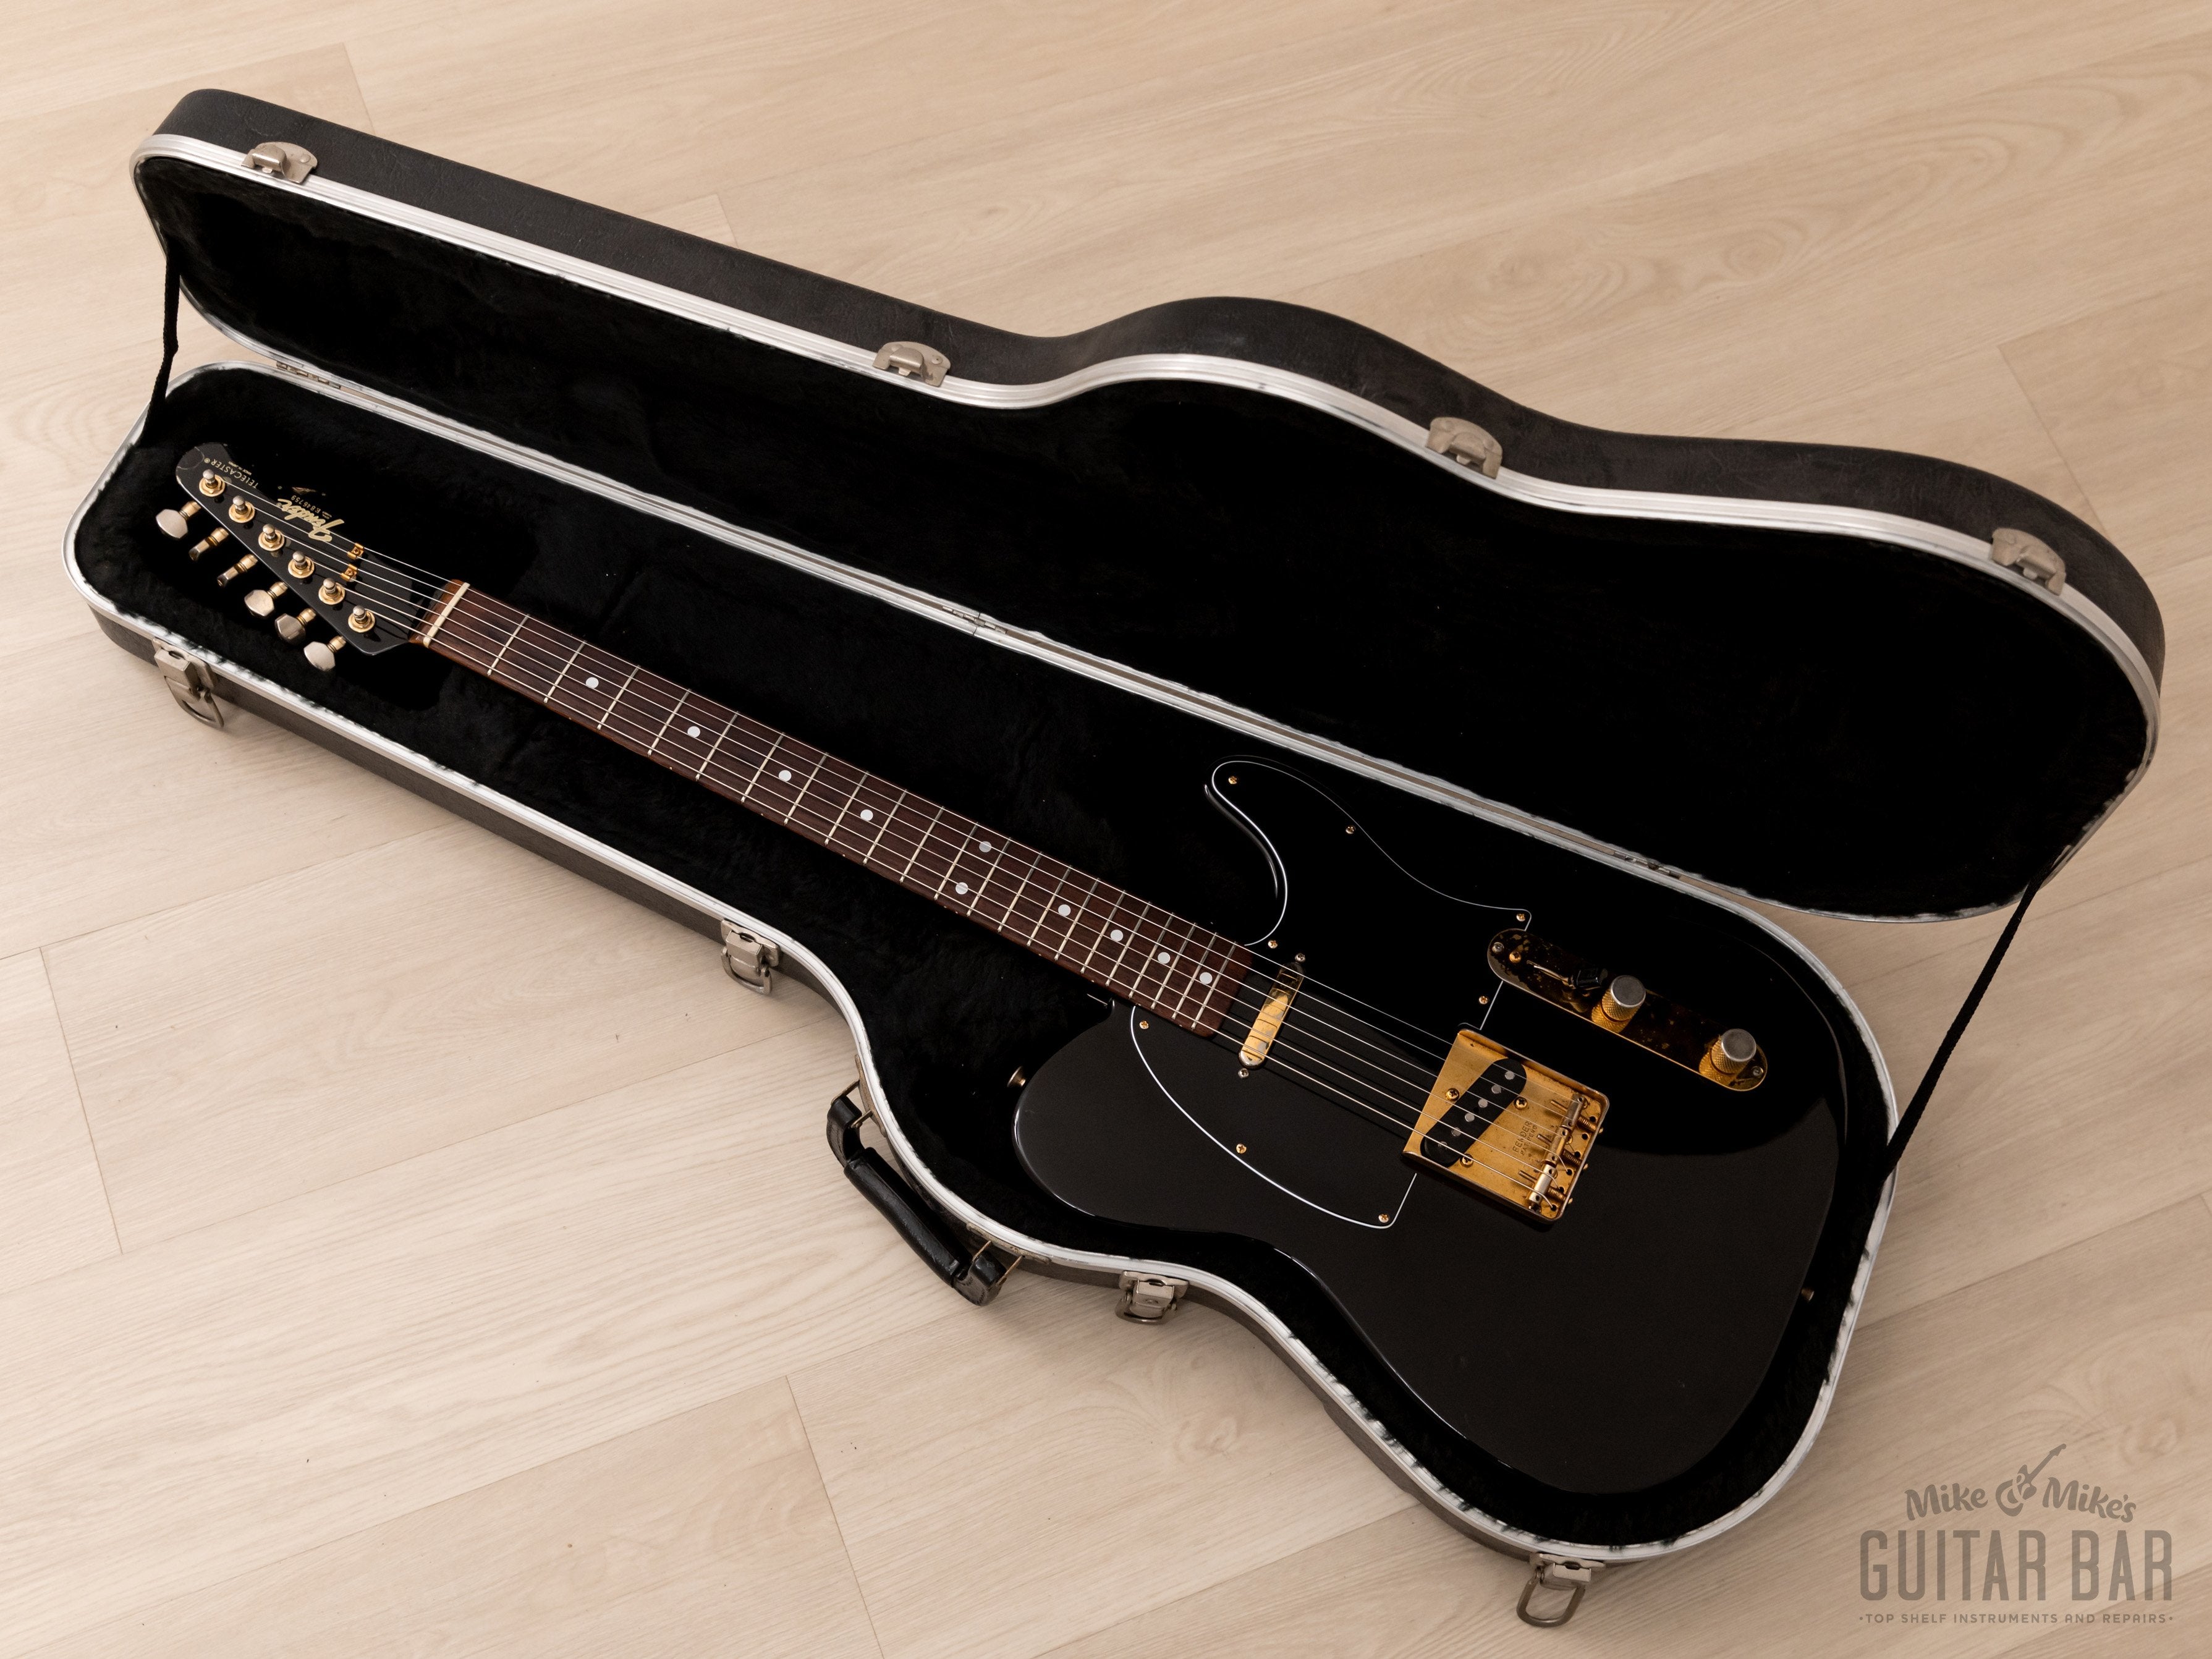 1988 Fender Telecaster TLG60-80 Vintage Guitar Black w/ Gold Hardware & Case, Japan MIJ Fujigen